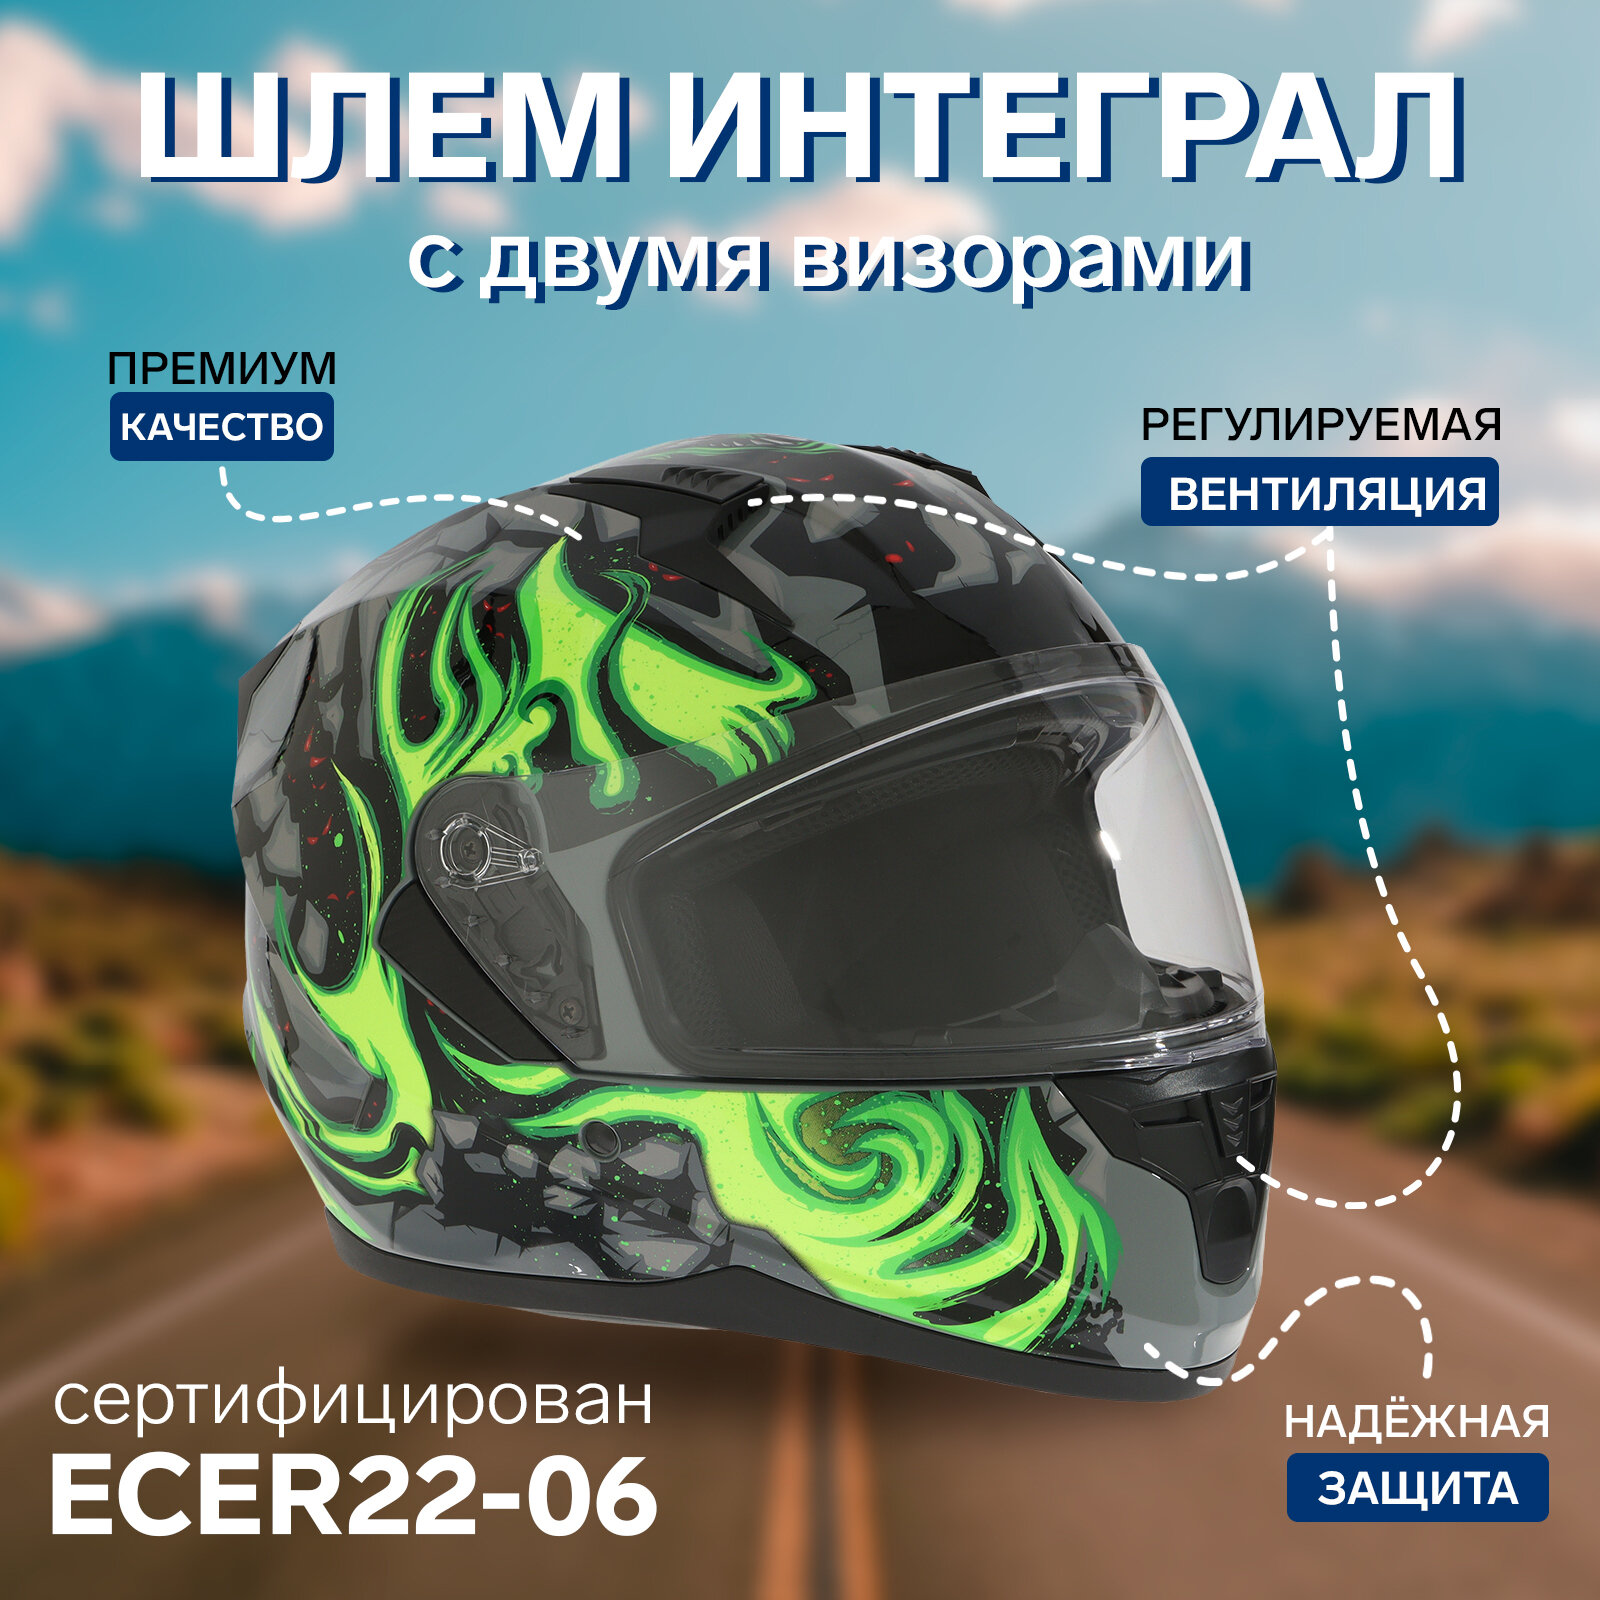 Шлем интеграл с двумя визорами размер M (57-58) модель BLD-M67E черно-зеленый